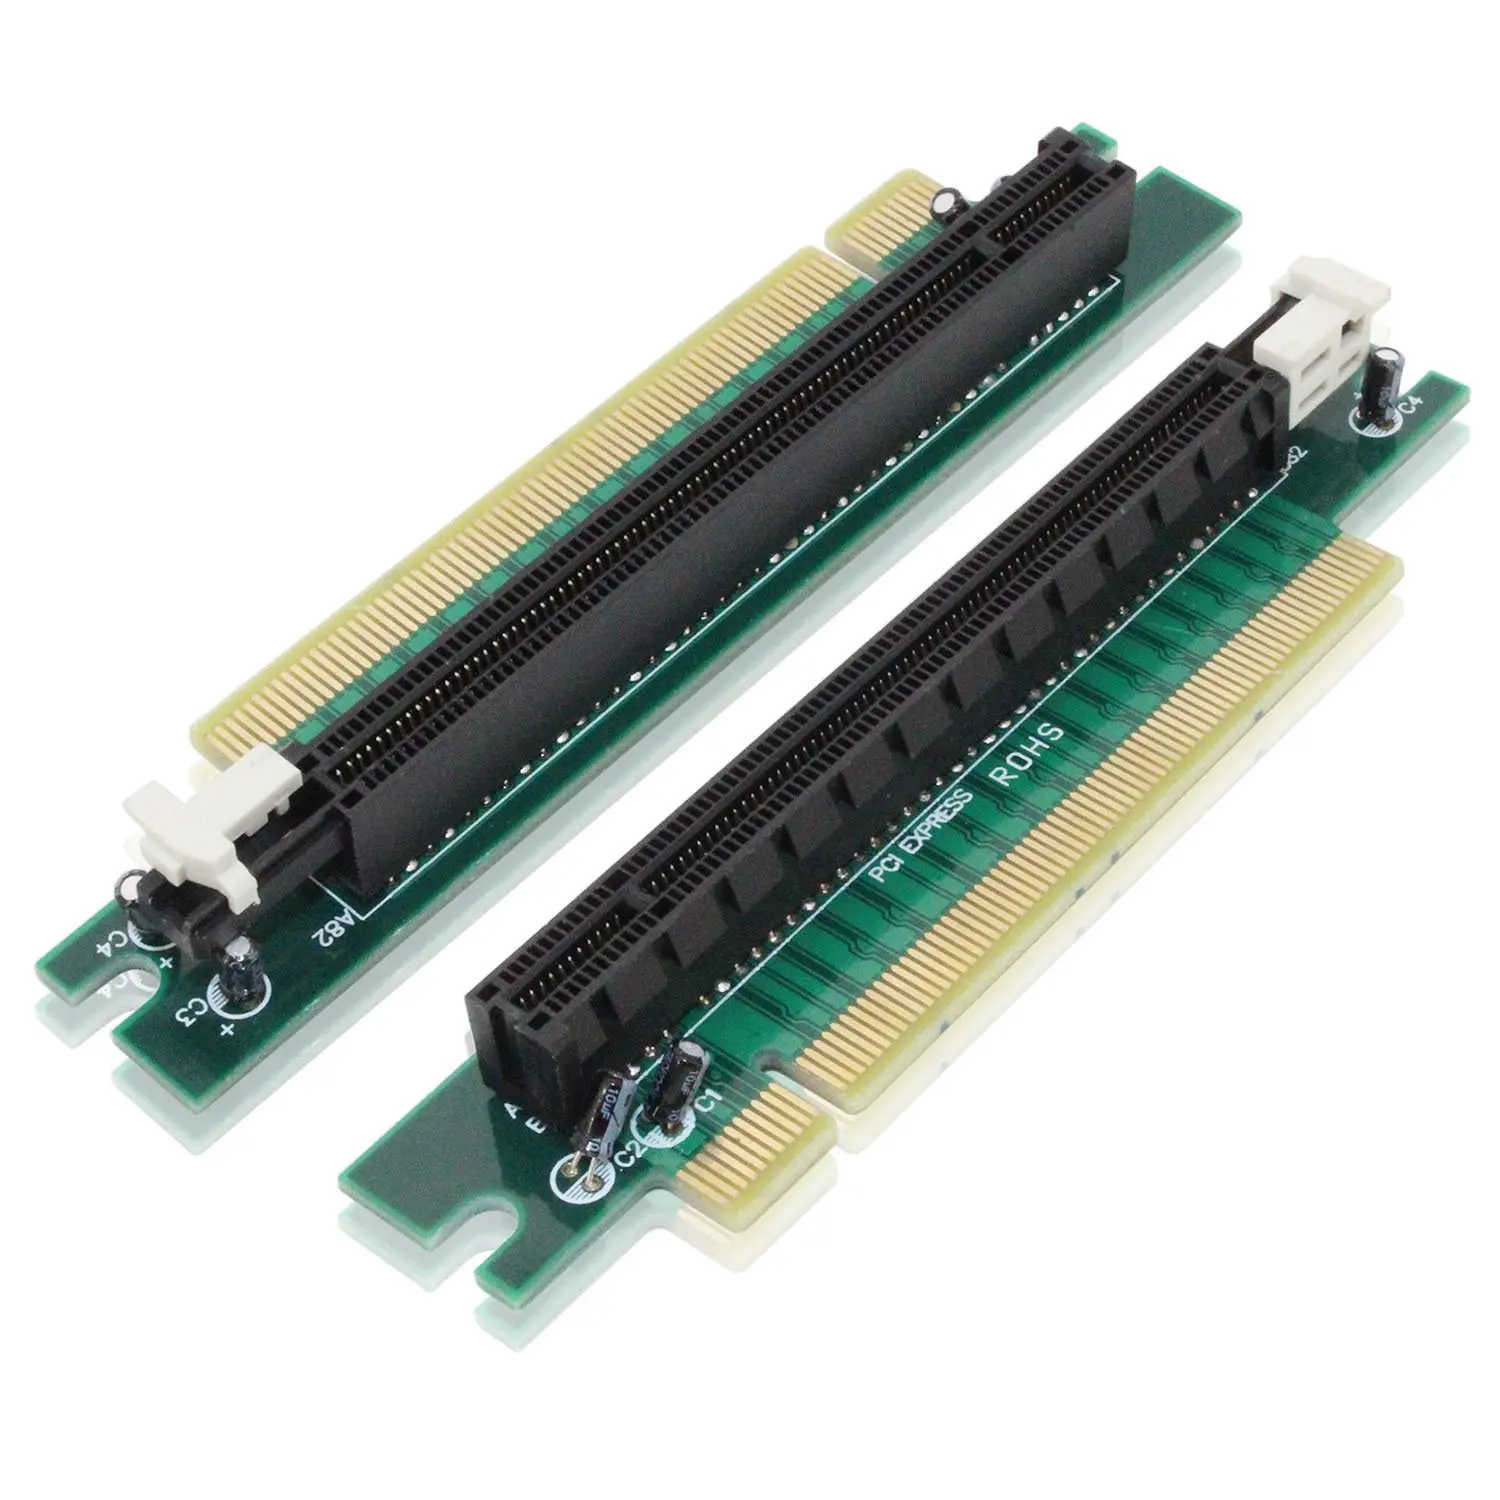 Psi 16. Райзер PCI-E 4.0 x16. Угловой райзер PCI-E 16x. PCI-Express x4 райзер. Слот PCI Express x16.